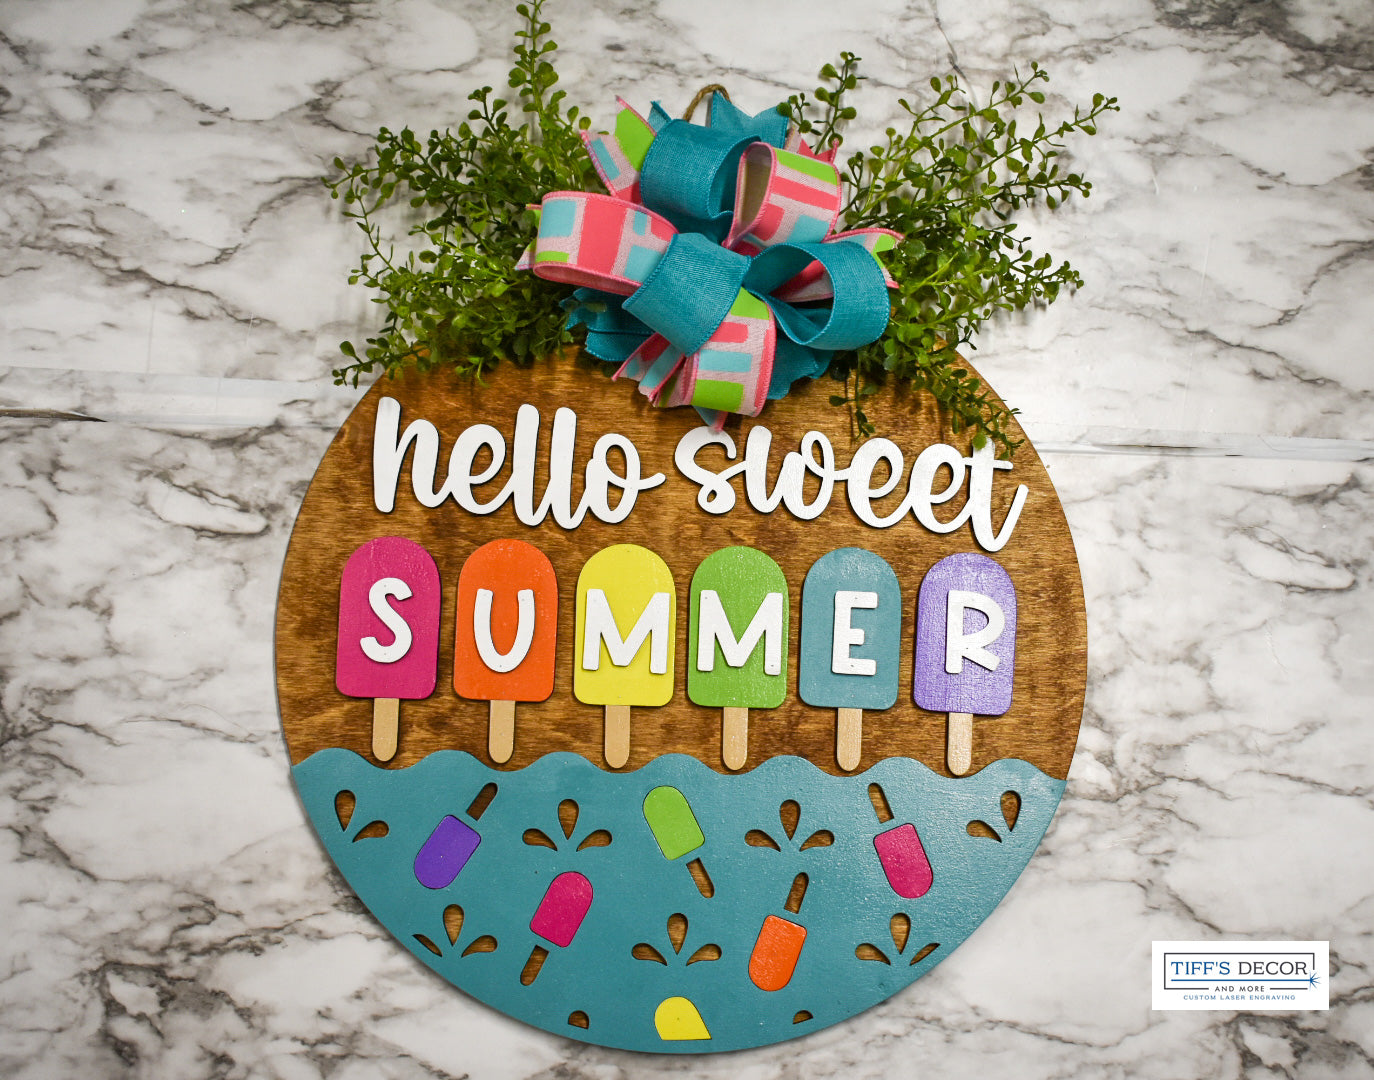 Sweet summer popsicle front door wreath sign